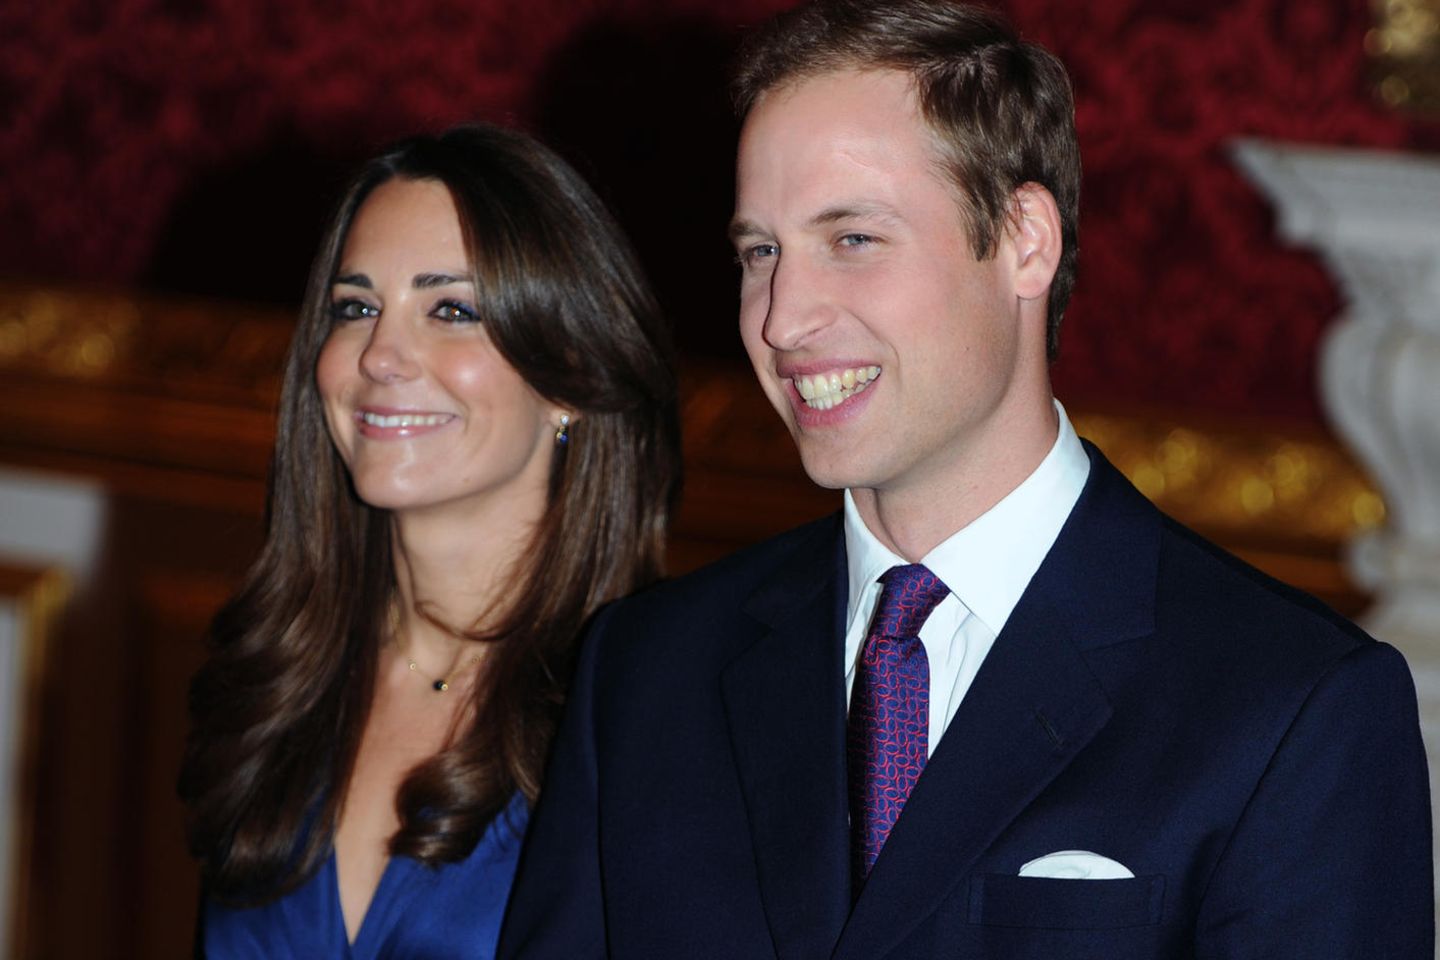 Herzogin Catherine - damals noch Kate Middleton - und Prinz William am Tag der Bekanntgabe ihrer Verlobung 